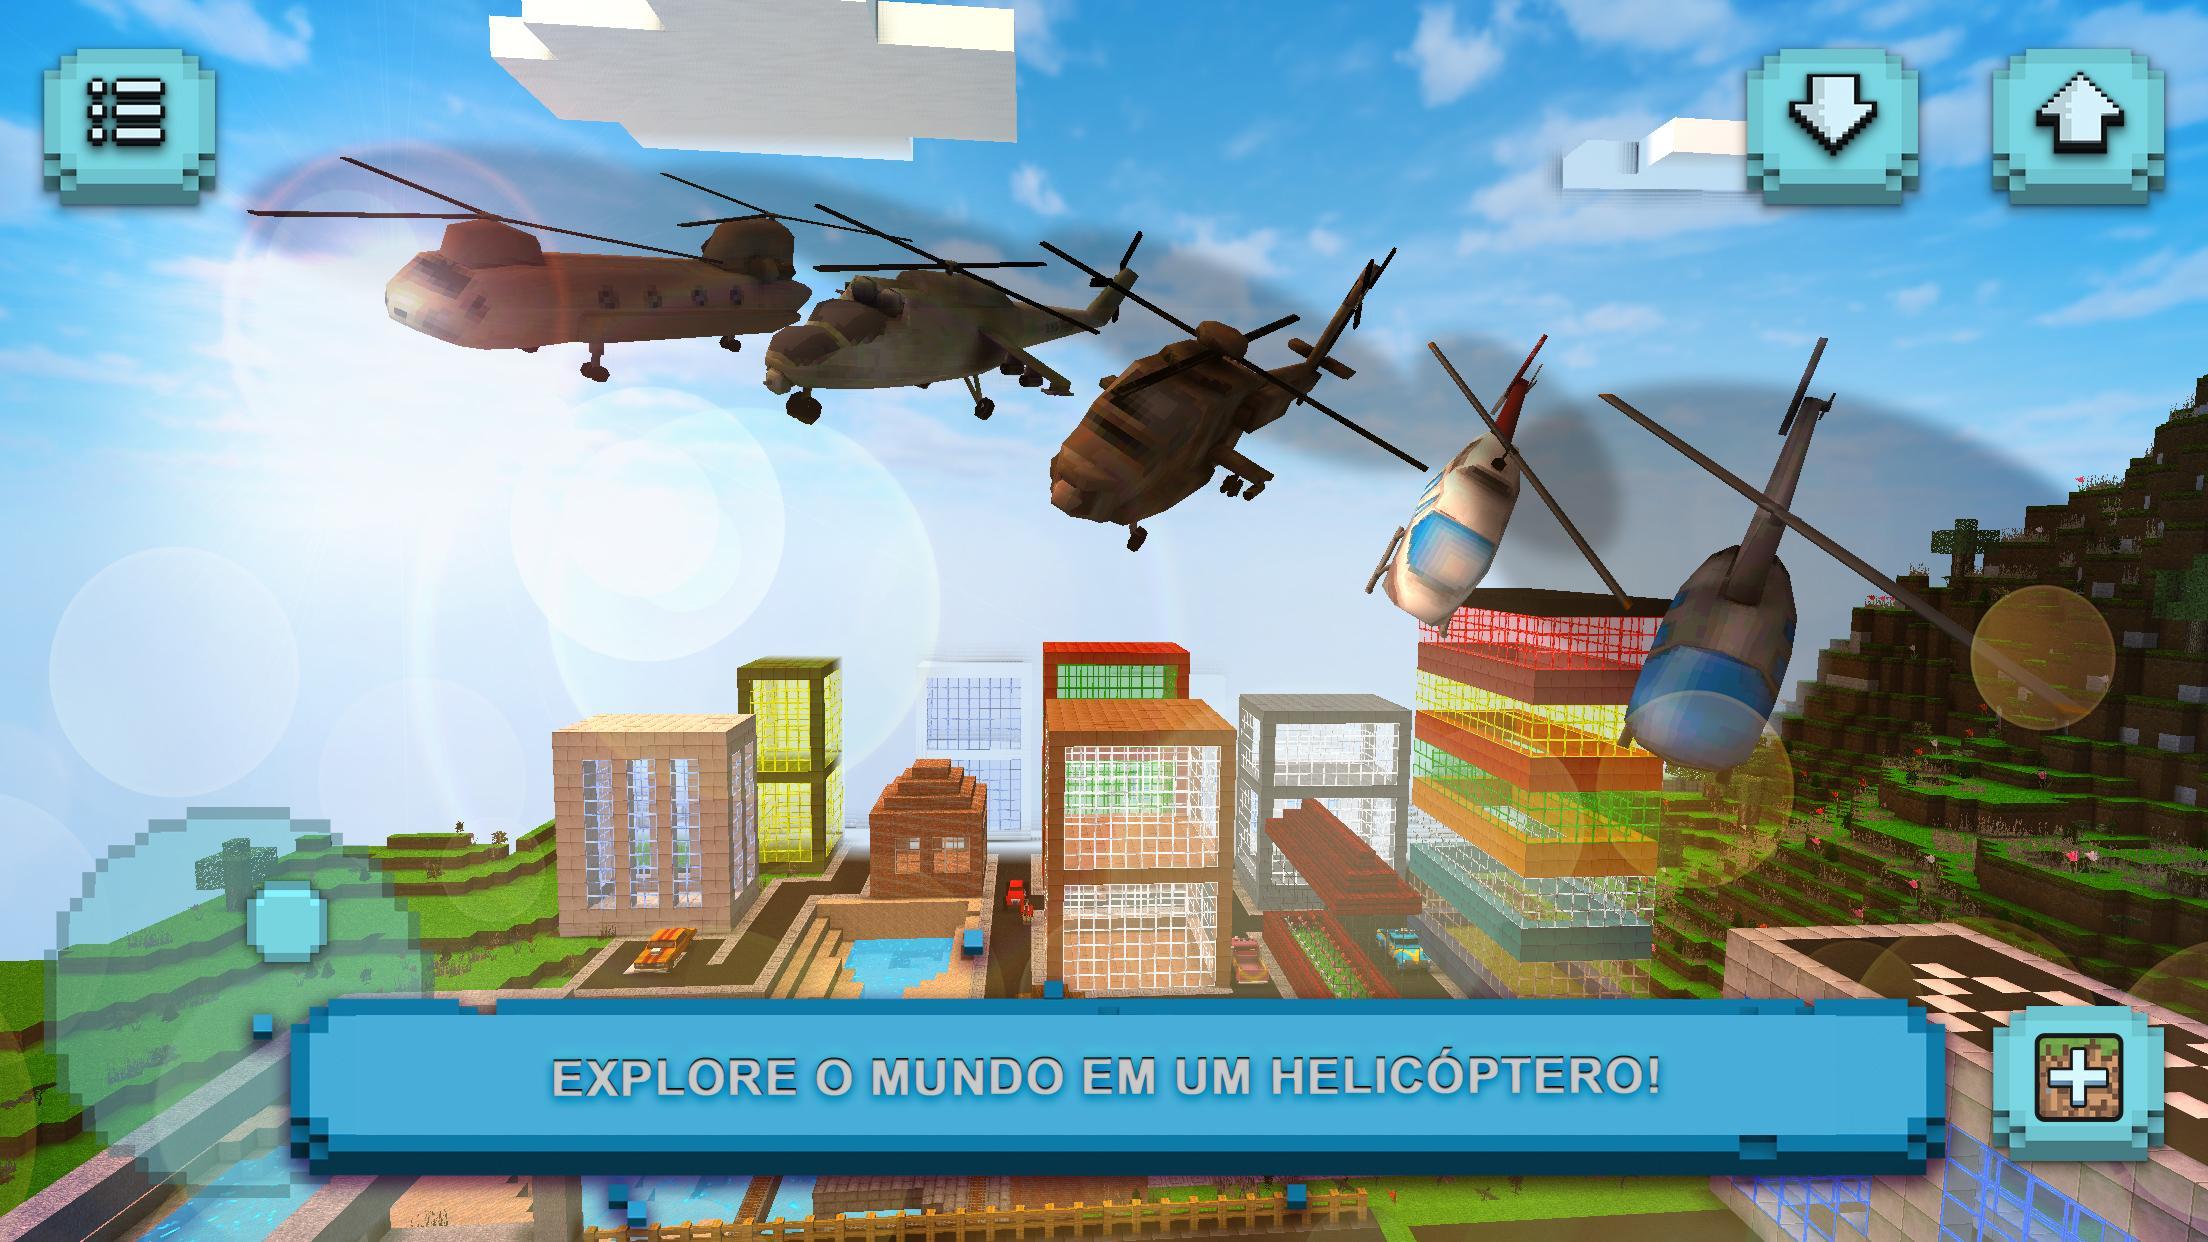 Screenshot 1 of Jogo de Helicóptero 1.29